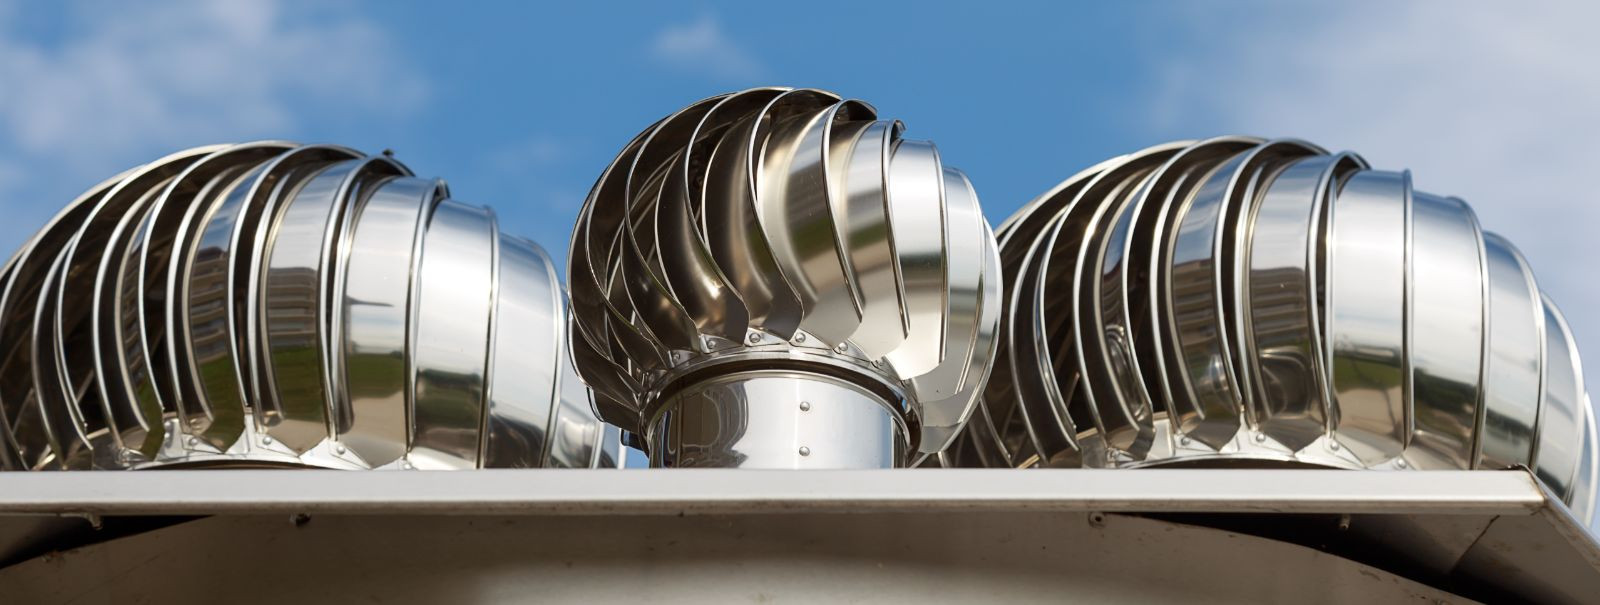 On oluline tagada, et teie elu- või tööruumides oleks korralik ventilatsioonisüsteem, et säilitada tervislik ja mugav keskkond. Siiski võivad ventilatsioonisüst